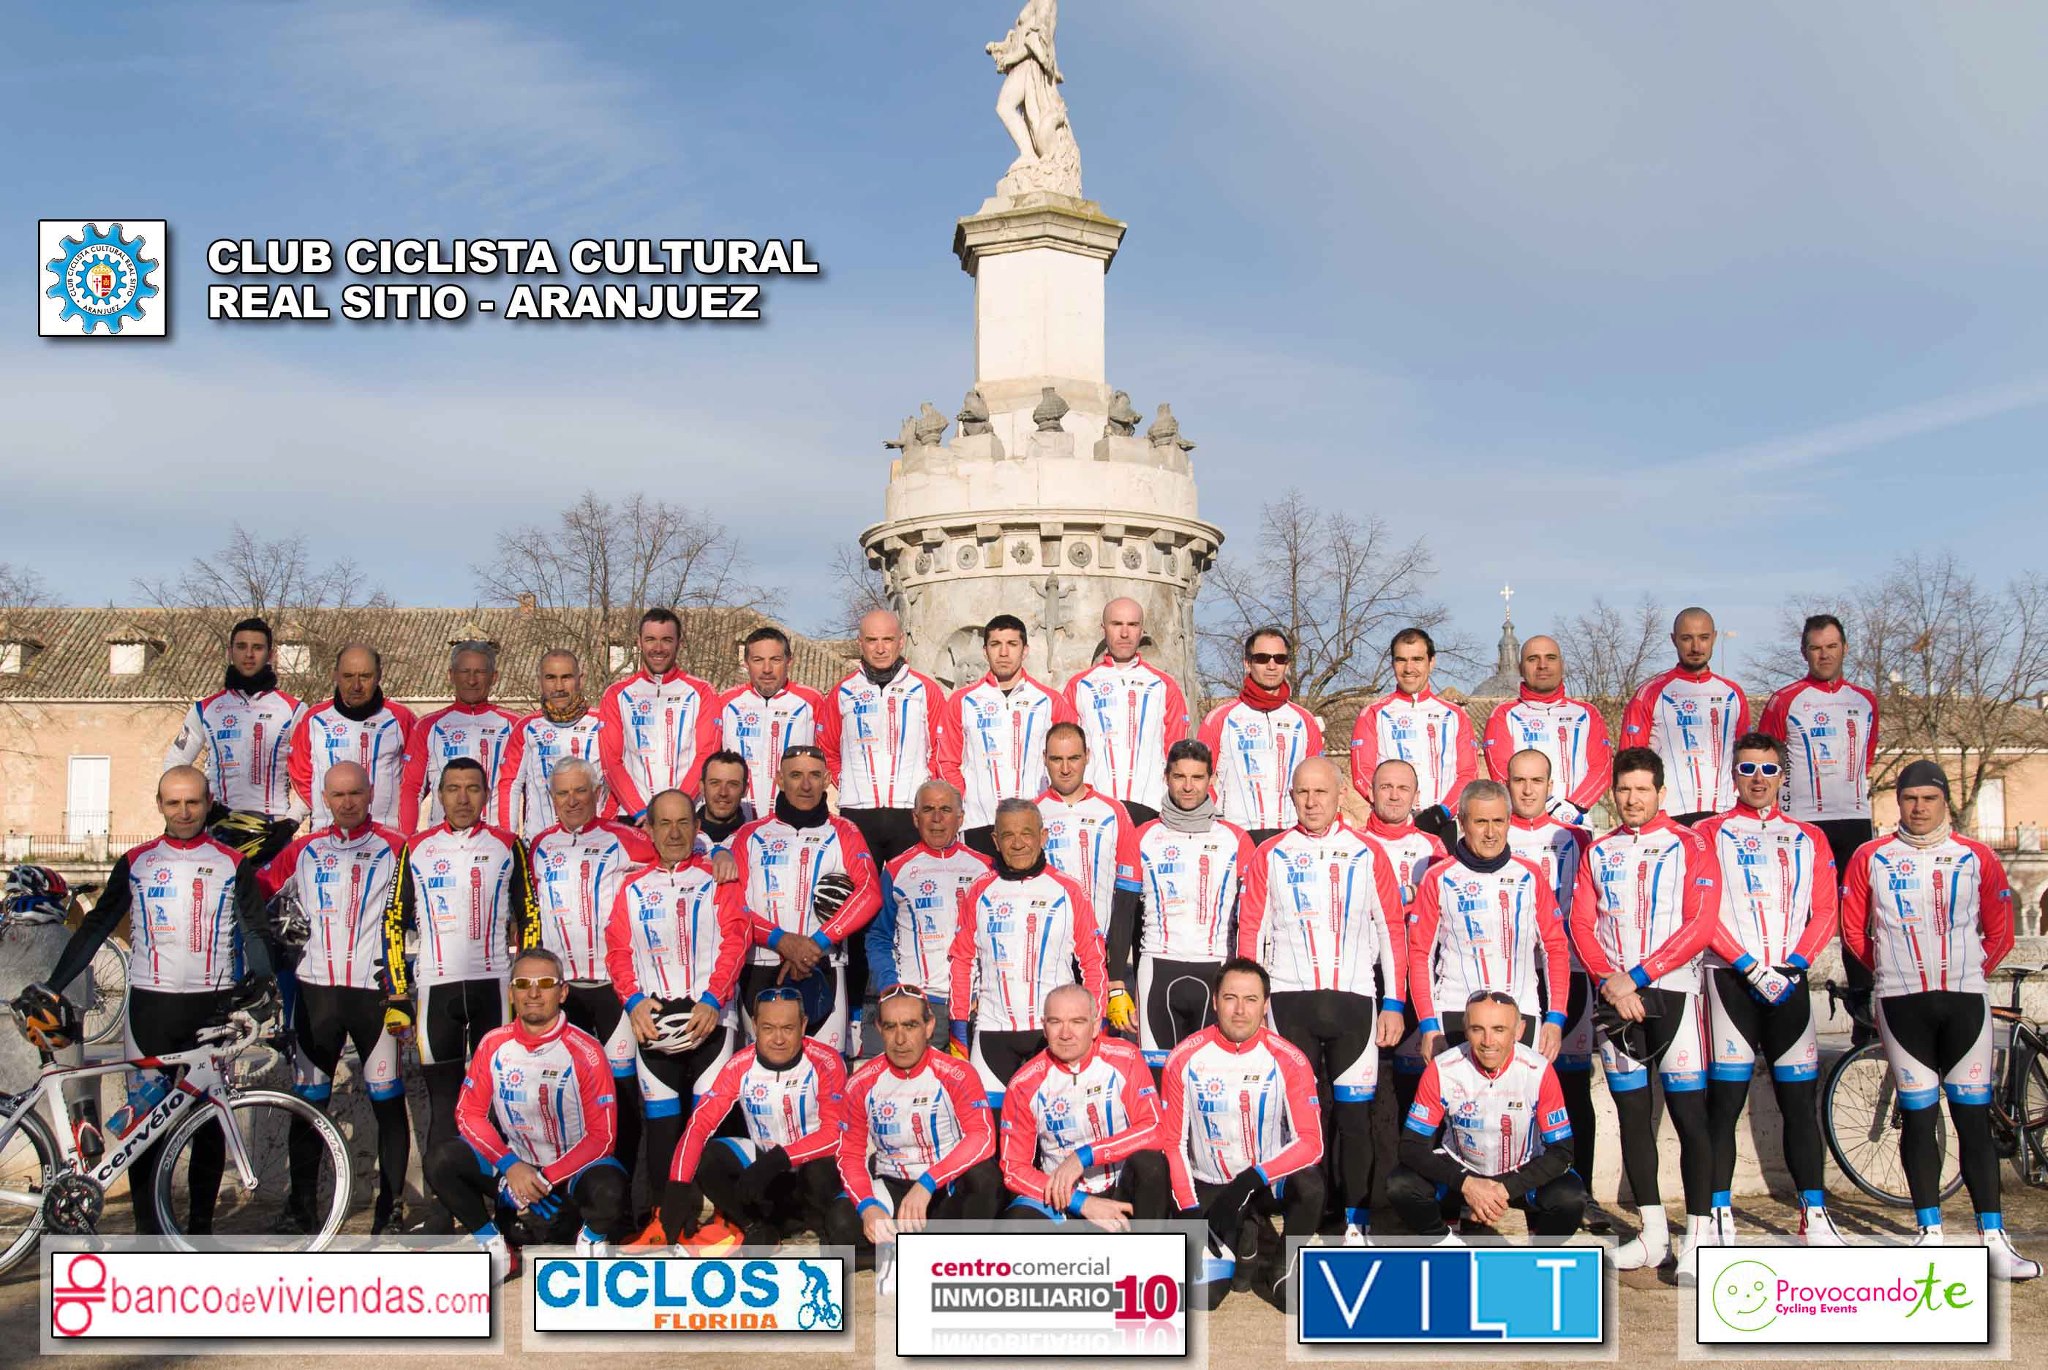 Club Ciclista Cultural Real Sitio de Aranjuez